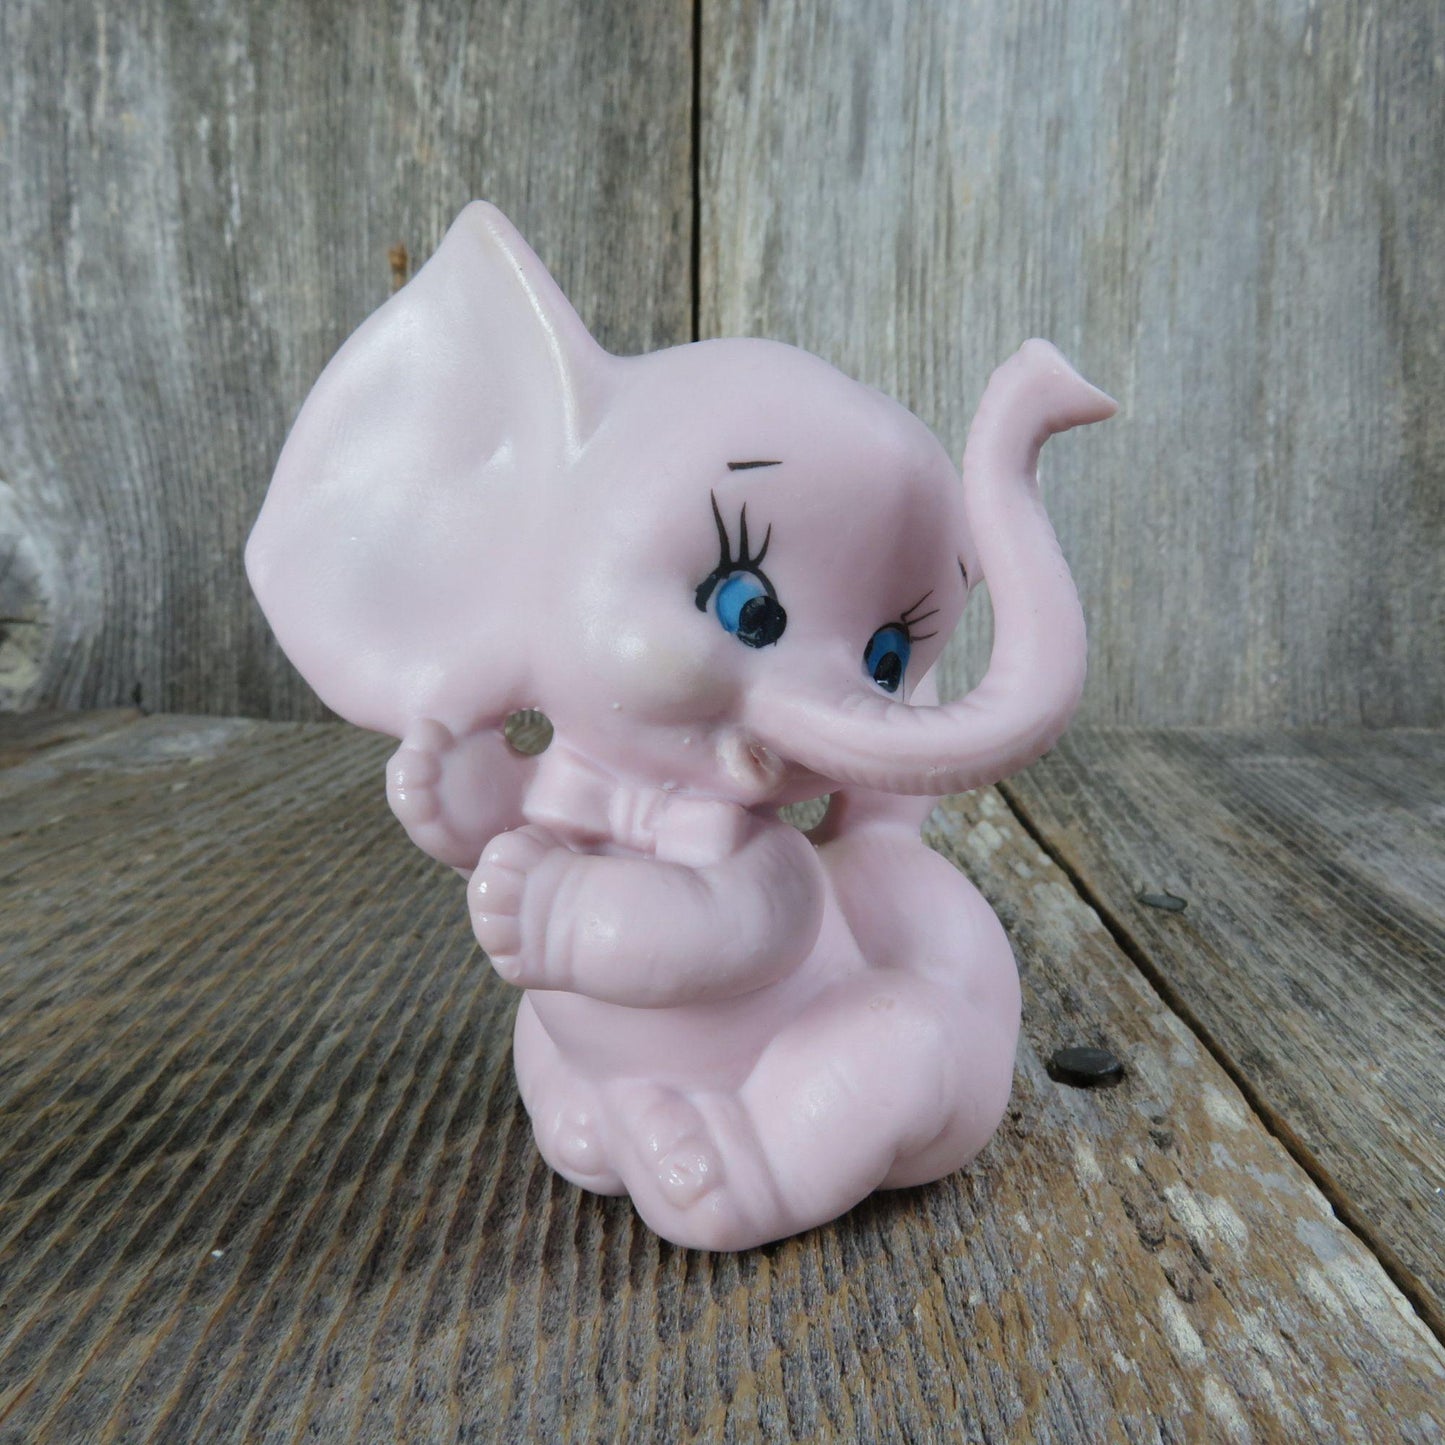 Vintage Pink Elephant Figurine Ceramic Bisque Blue Eyes Porcelain Made in Japan